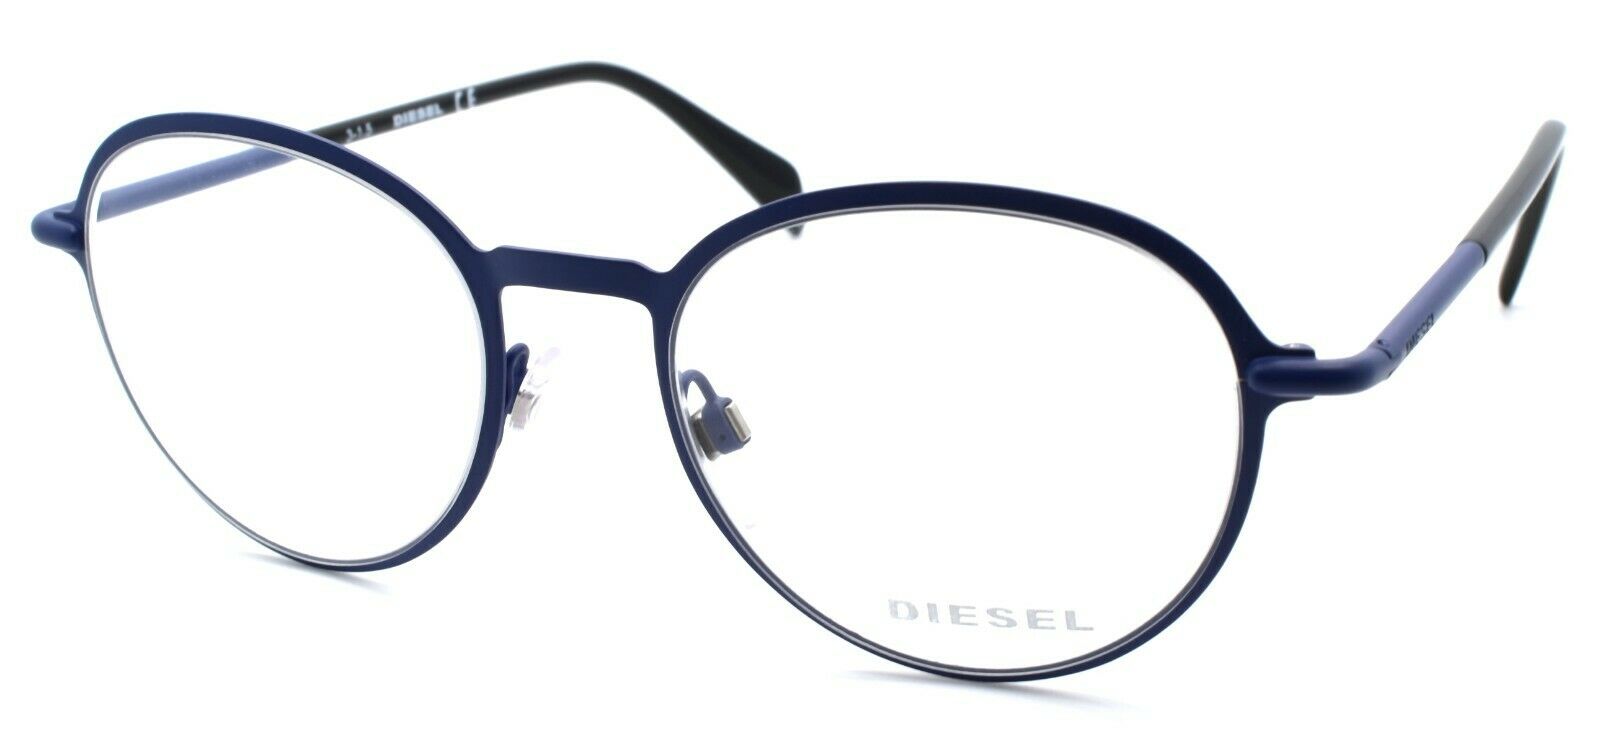 1-Diesel DL5165 092 Unisex Eyeglasses Frames 49-19-145 Matte Blue-664689708499-IKSpecs